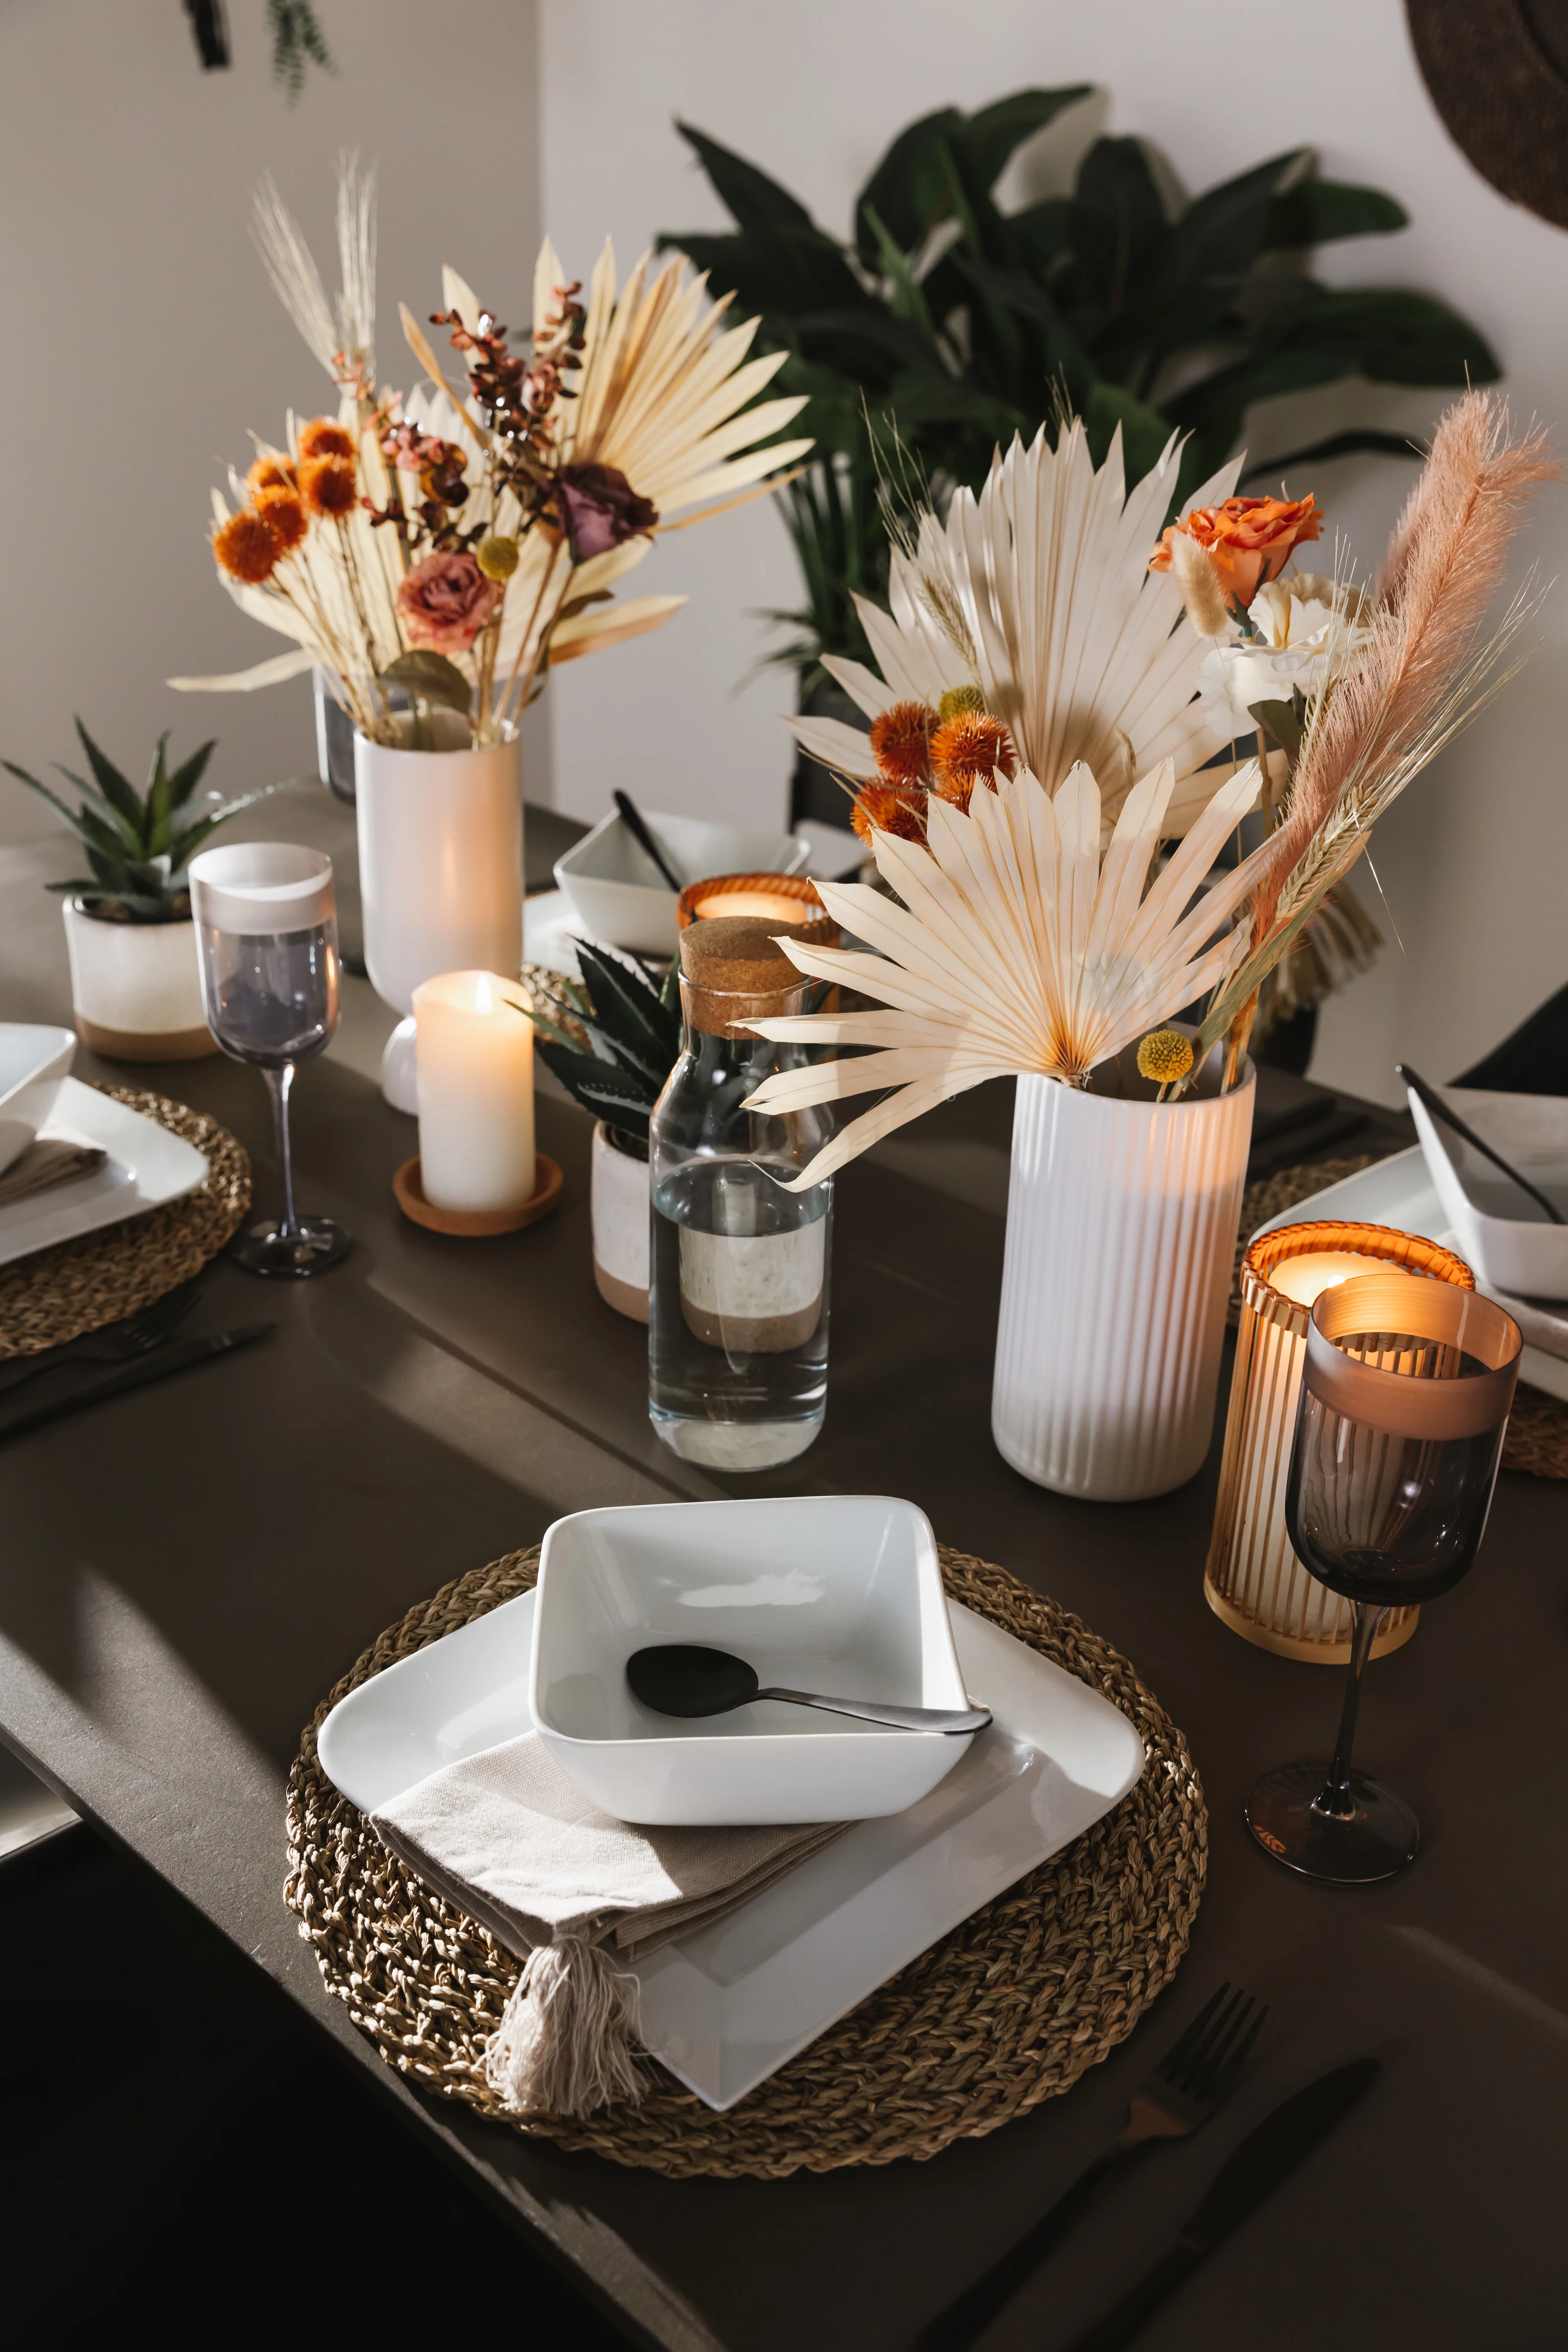 Detailaufnahme von der Tischdekoration im Esszimmer mit Kerzen, Blumenvasen und Tischdeckchen aus Bast auf einem schwarzen Untergrund